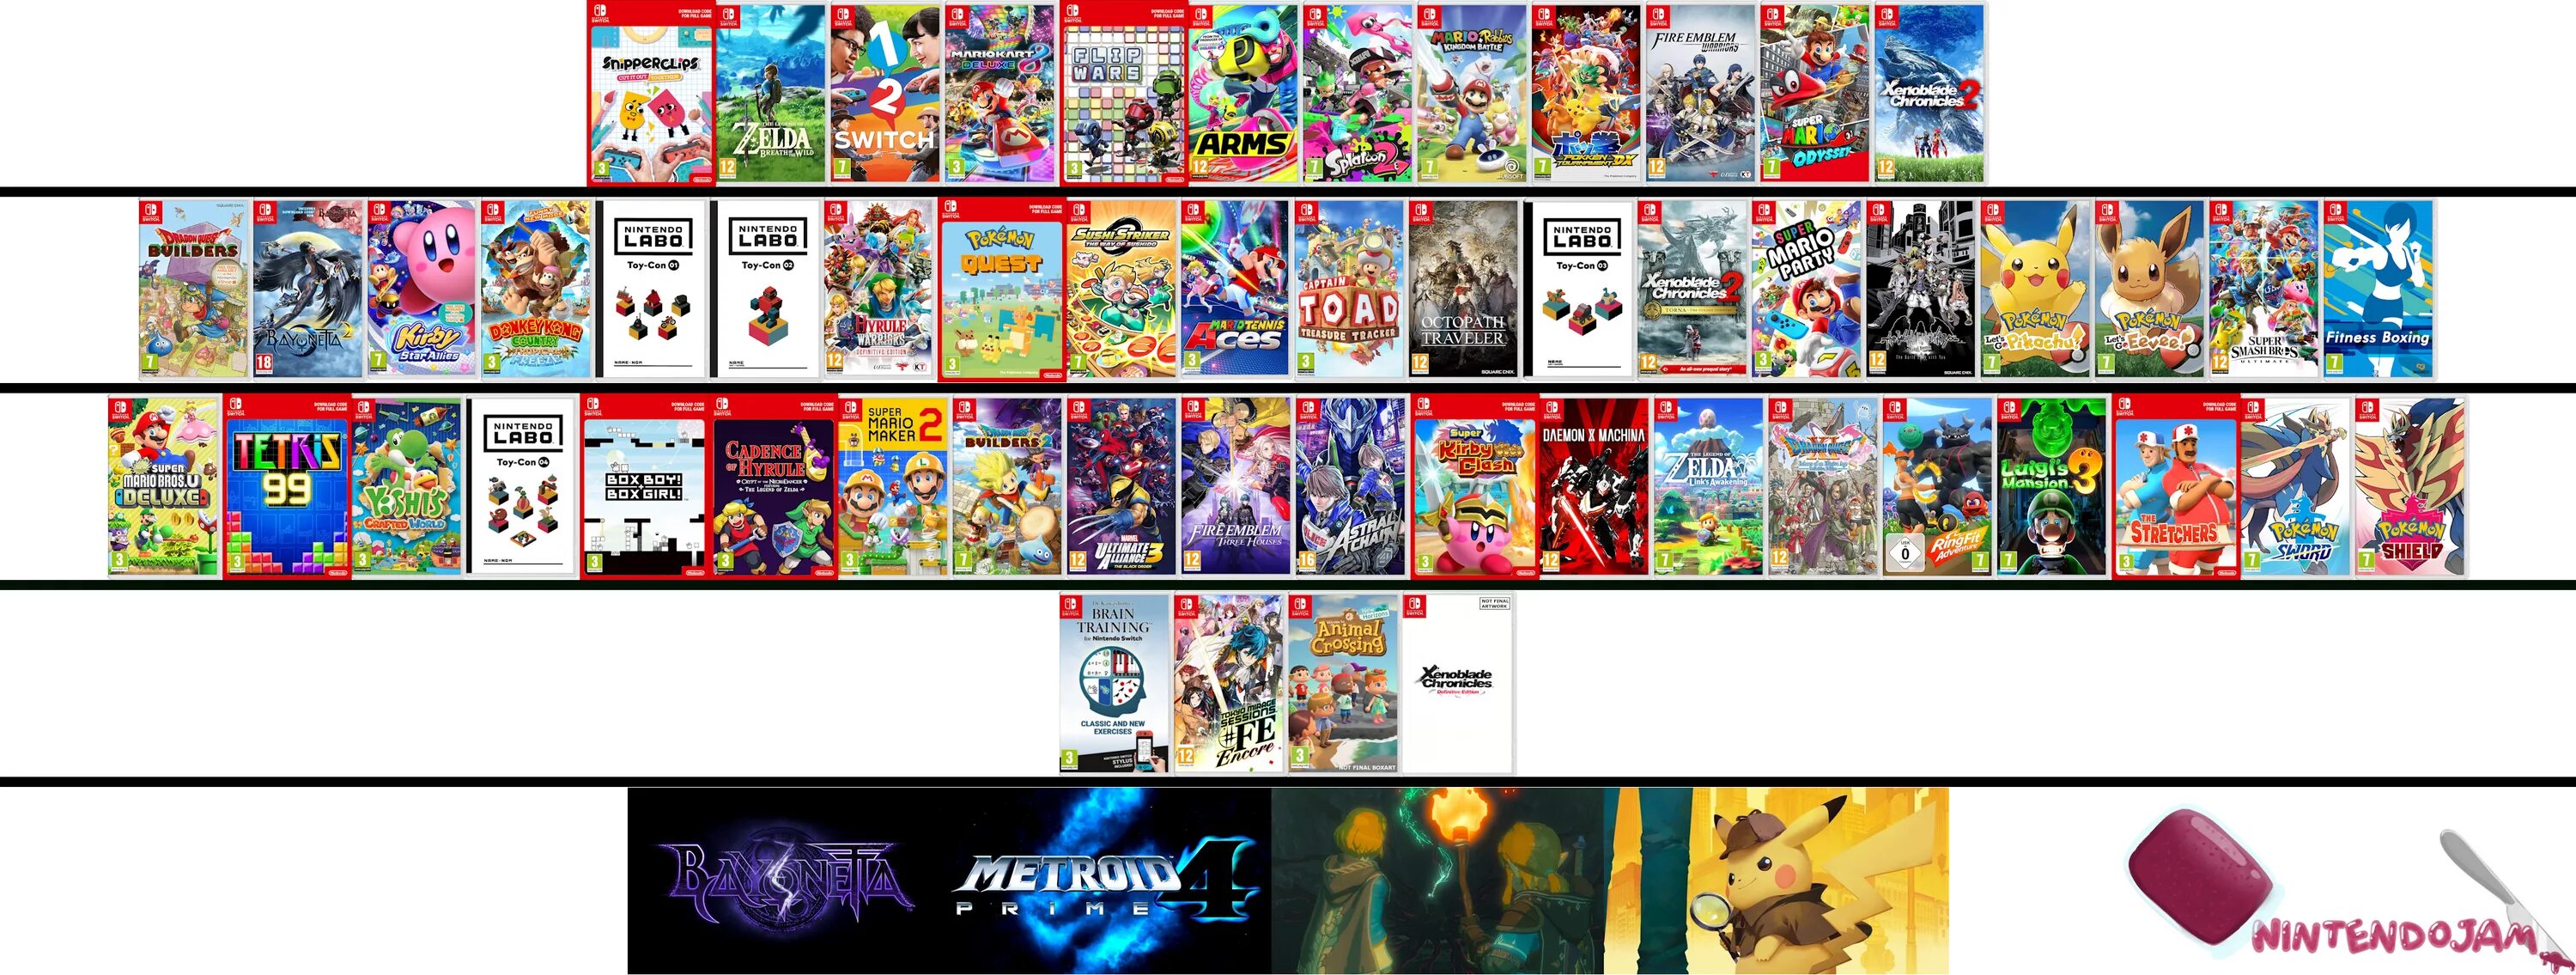 Нинтендо свитч игры список. Nintendo Switch games 2020. Нинтендо свитч персонажи. Лучшие игры для Nintendo Switch. Формат игр нинтендо